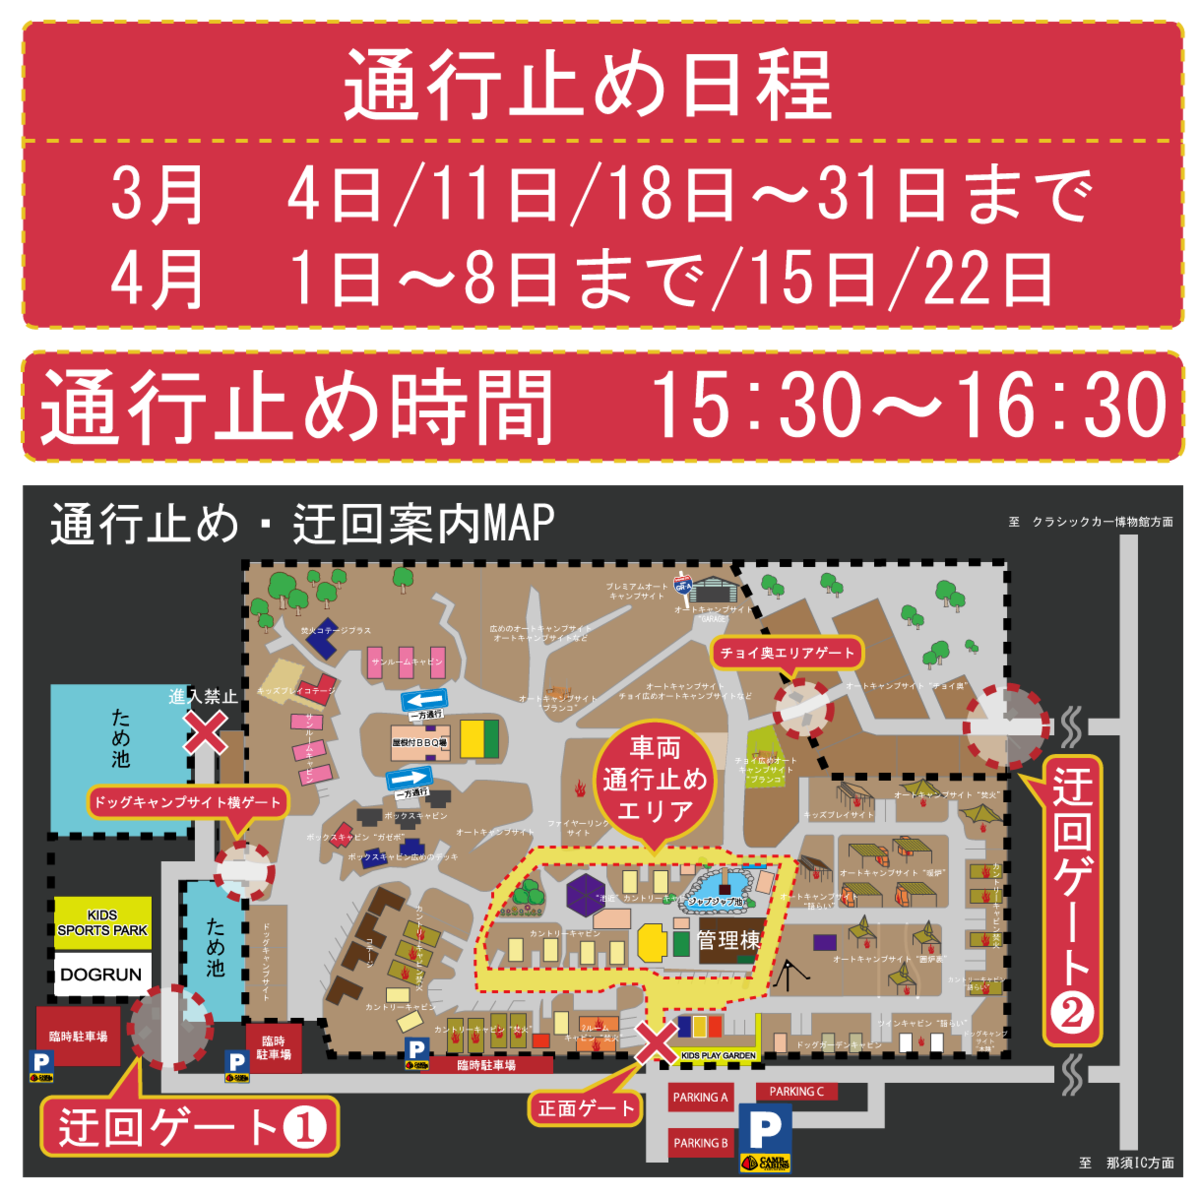 ケロリンピック通行止め迂回MAP3.png